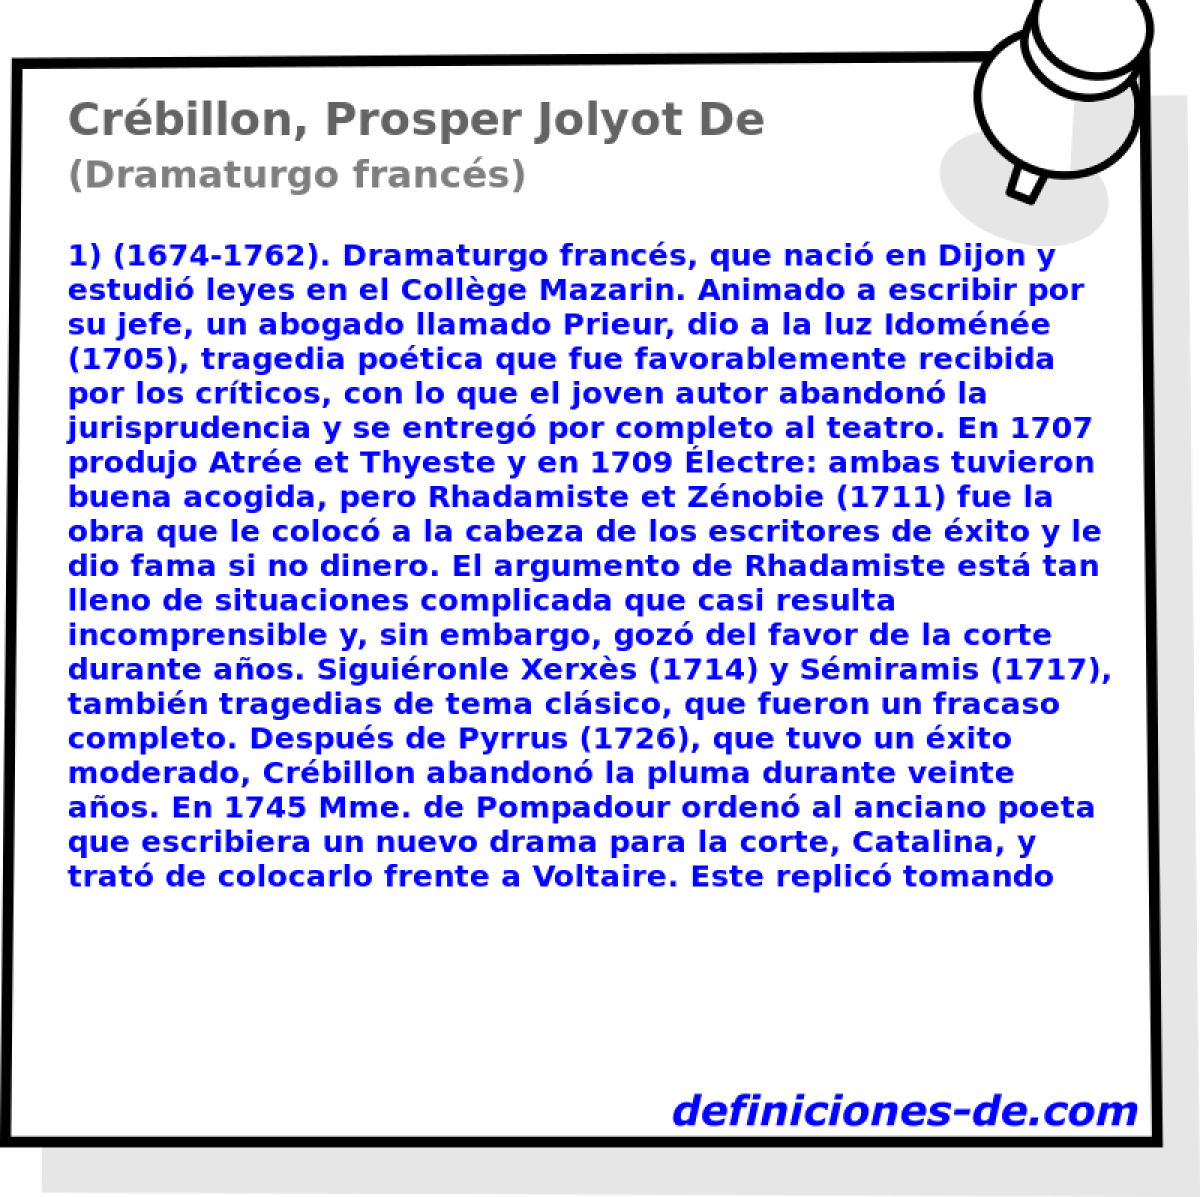 Crbillon, Prosper Jolyot De (Dramaturgo francs)